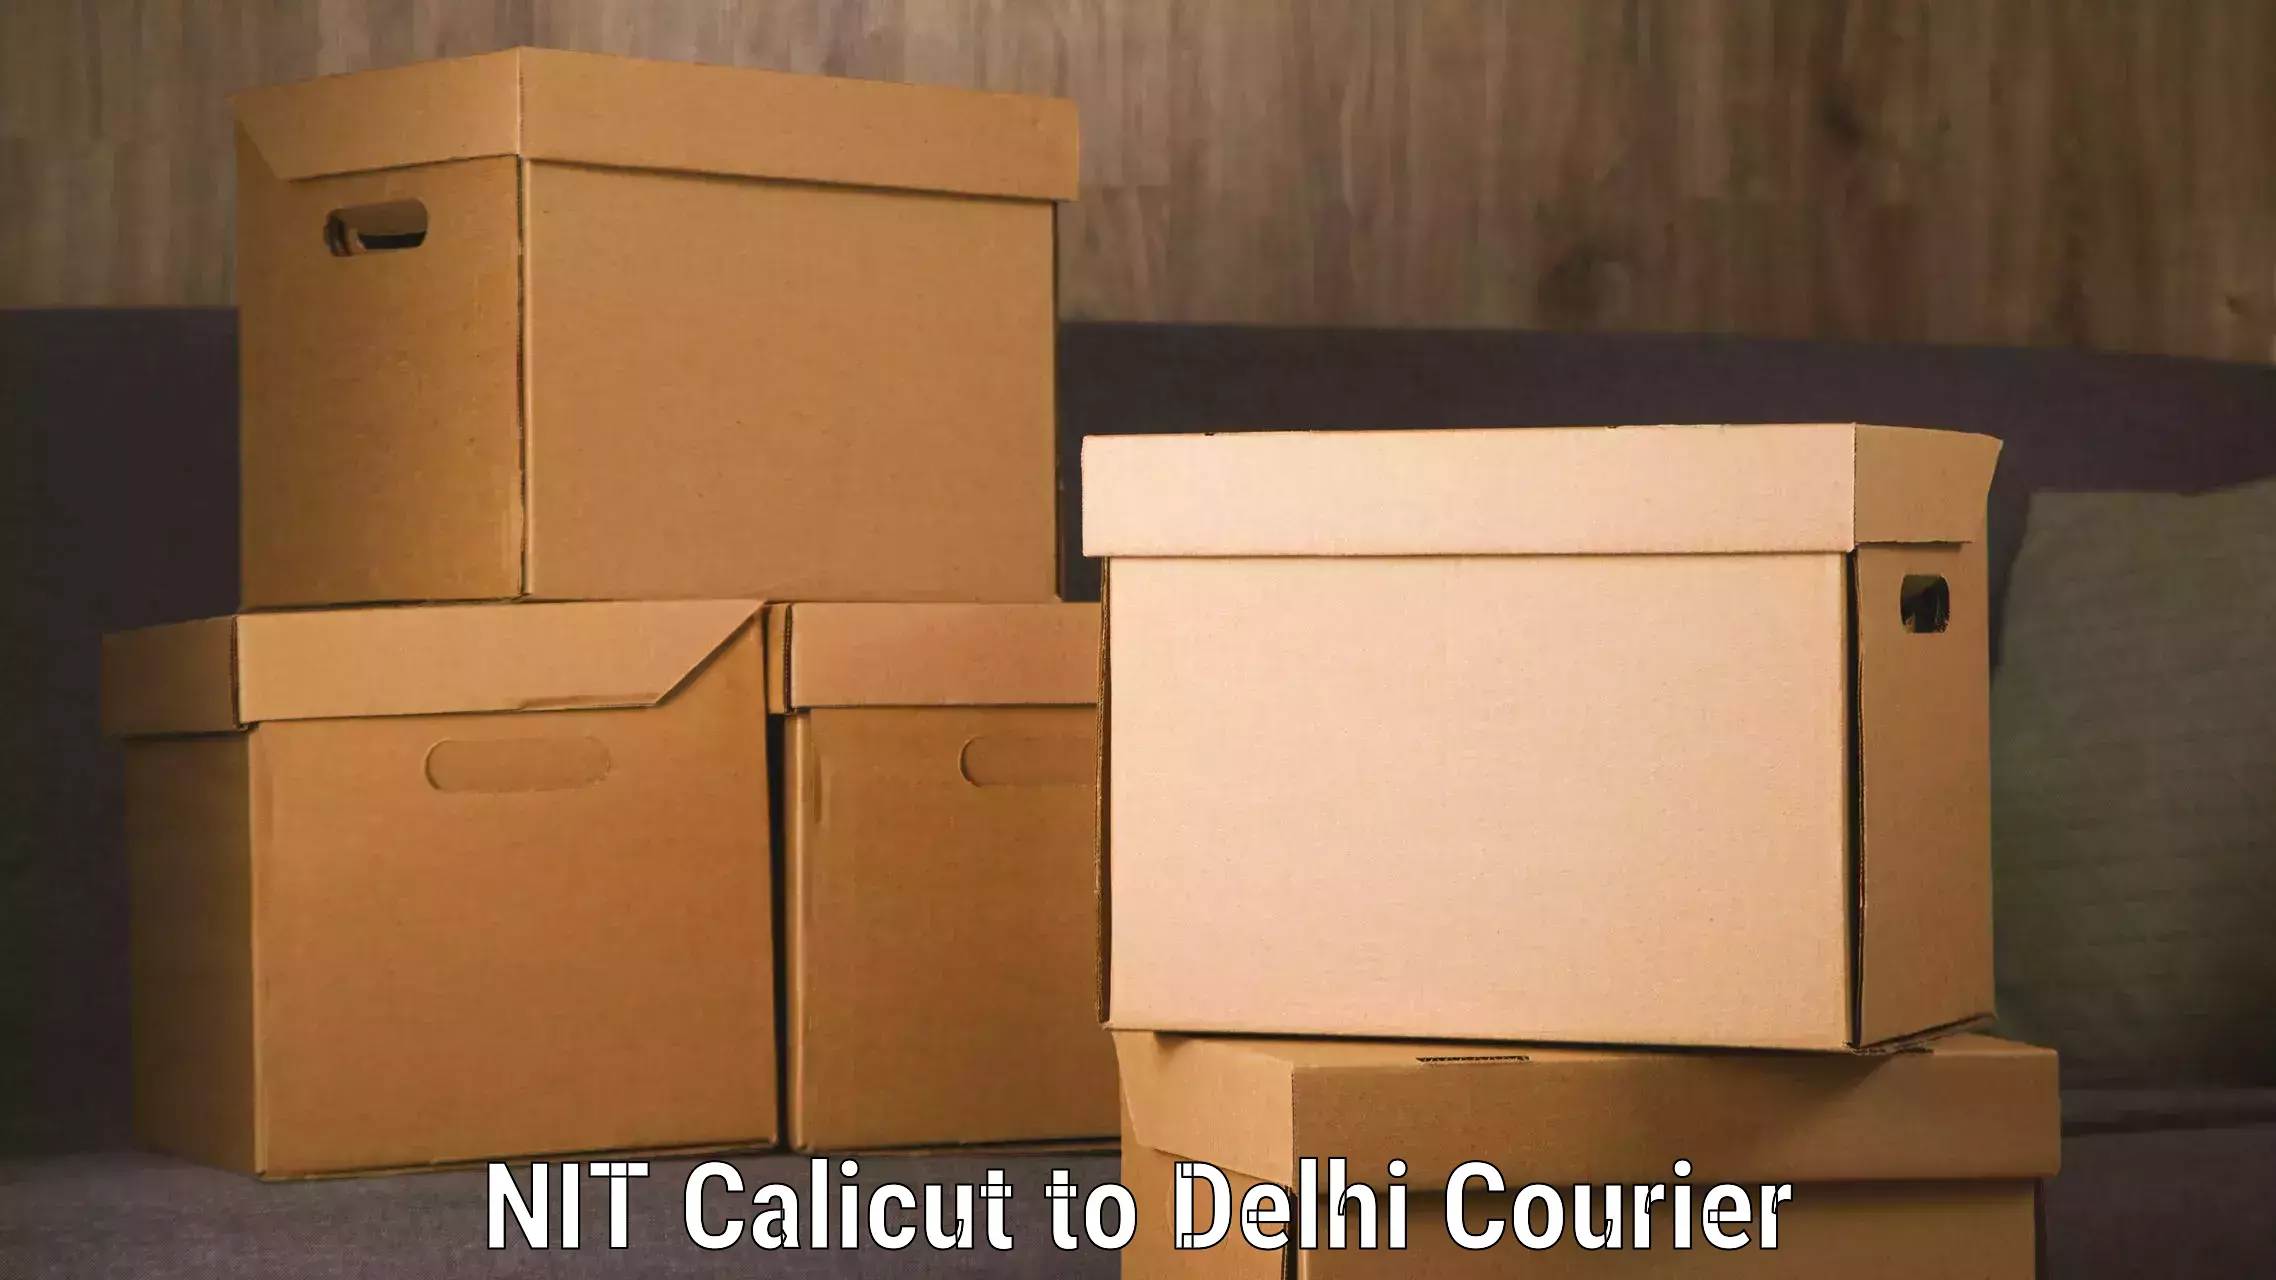 Flexible parcel services NIT Calicut to NIT Delhi